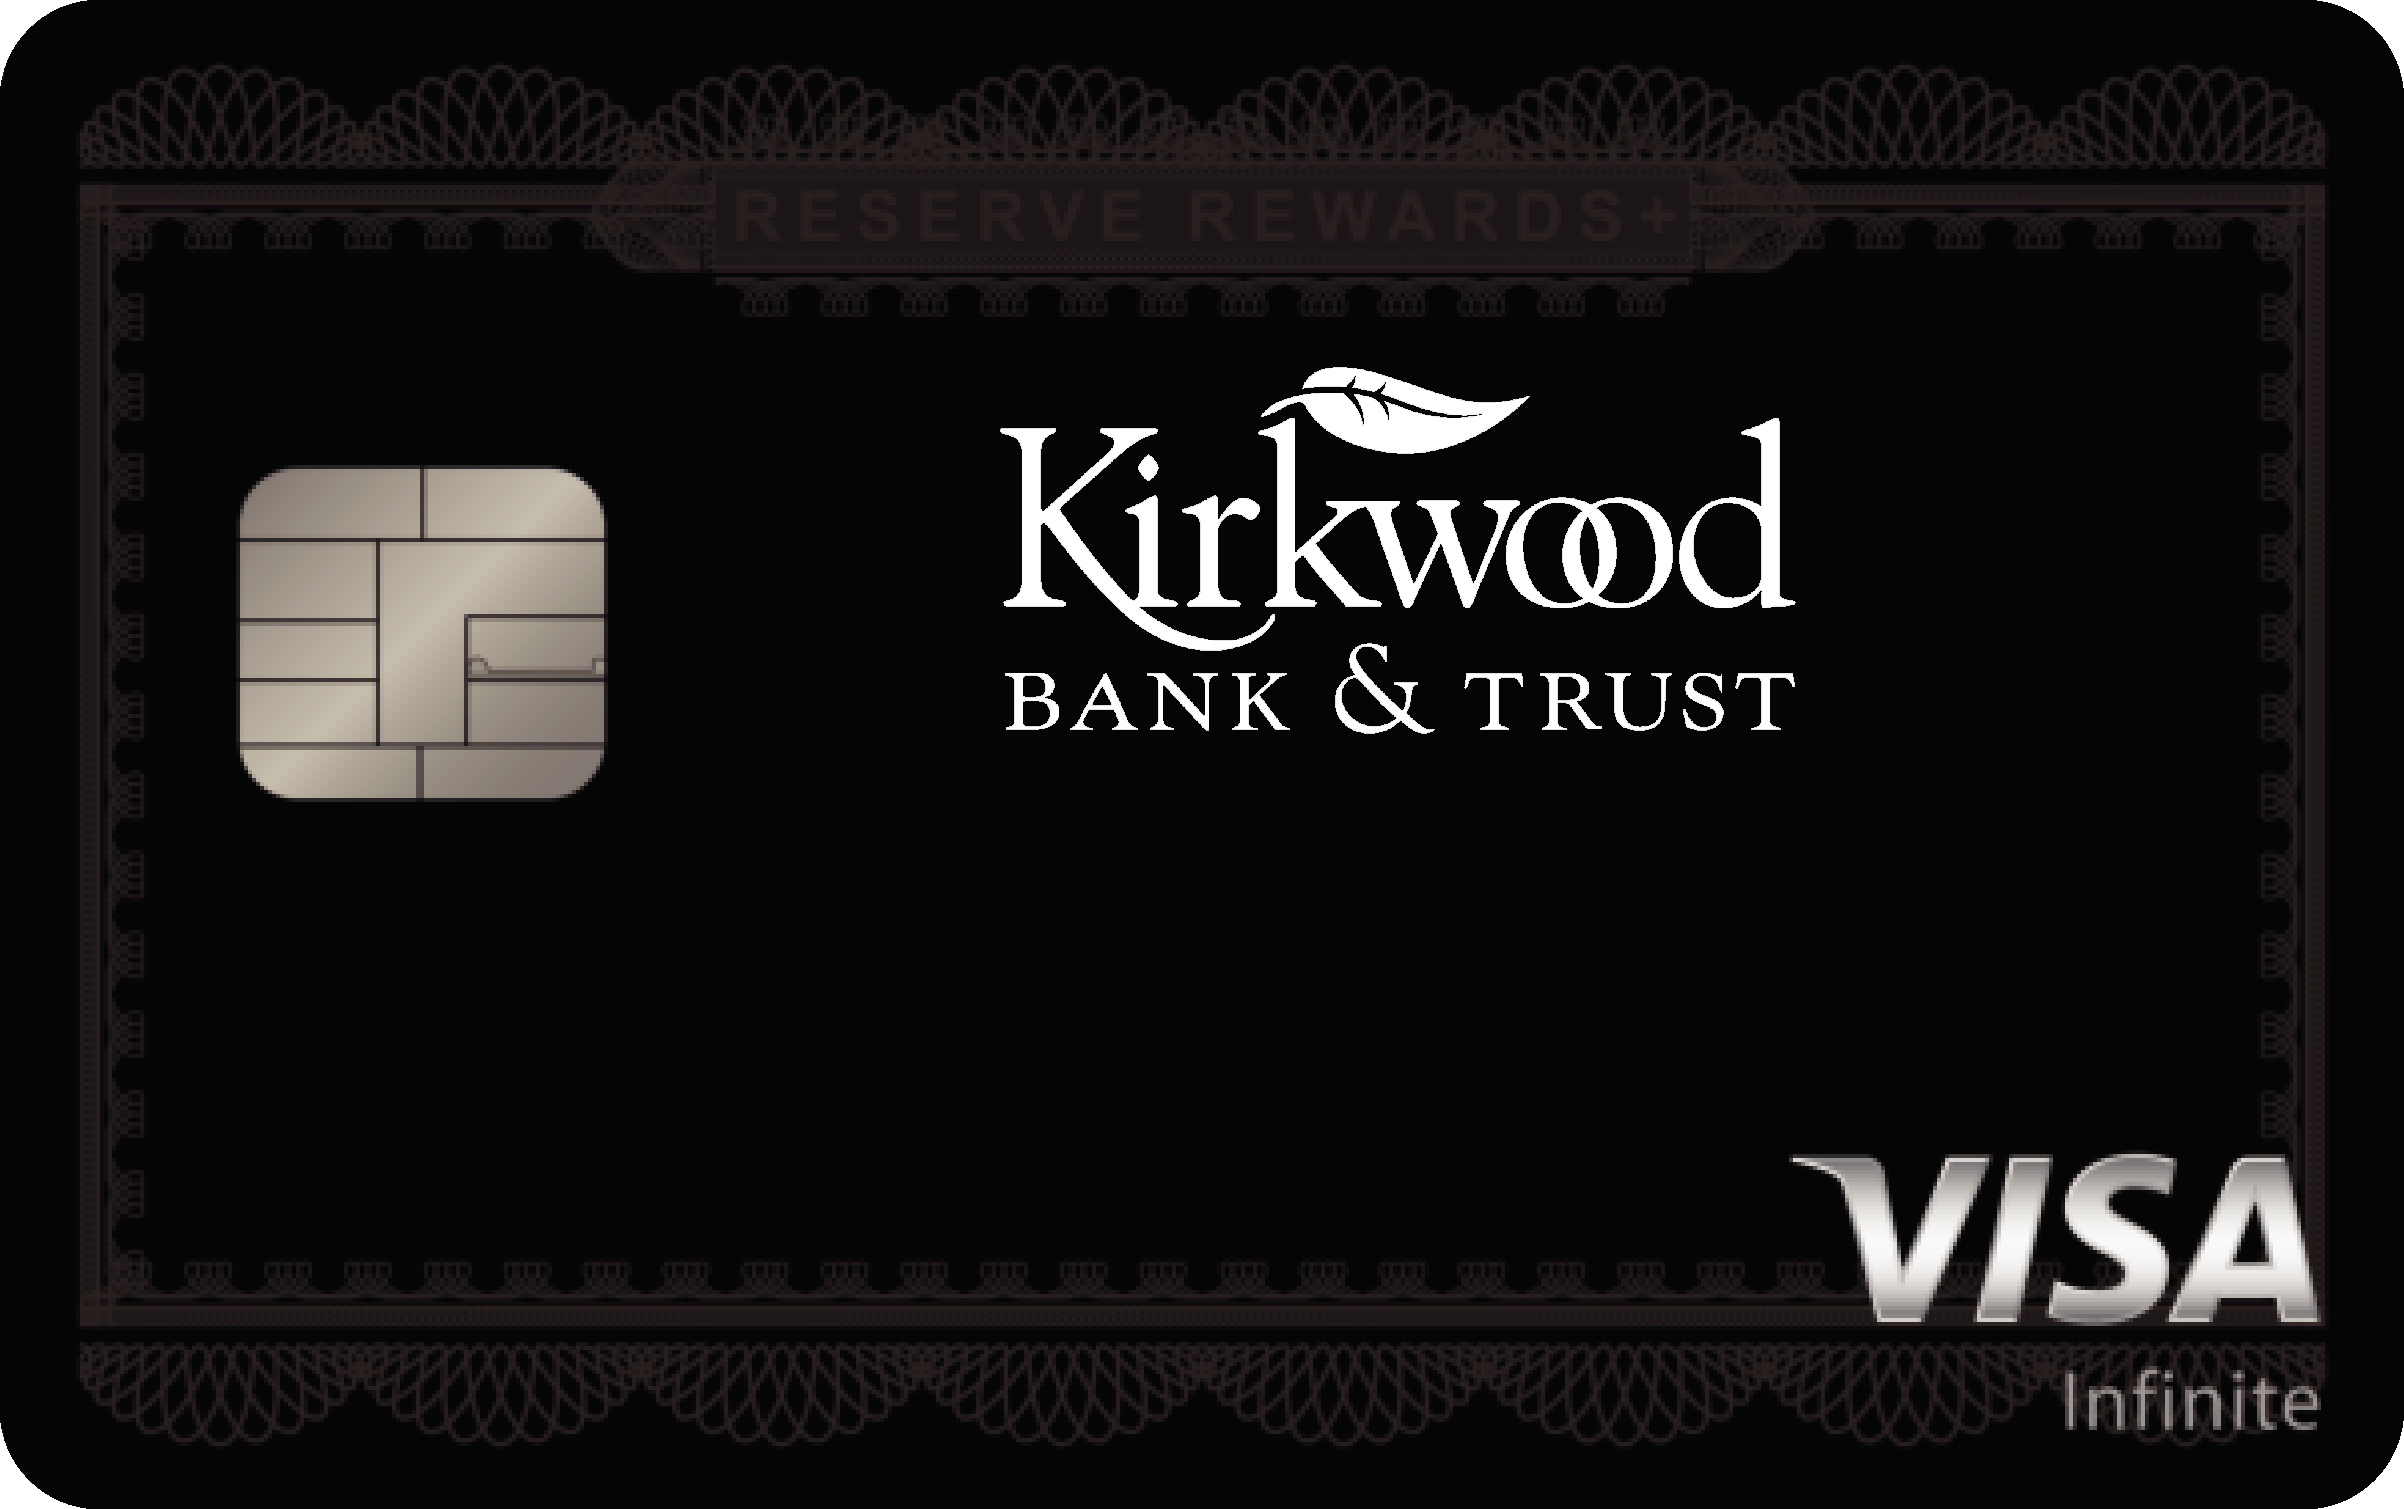 Kirkwood Bank & Trust Co